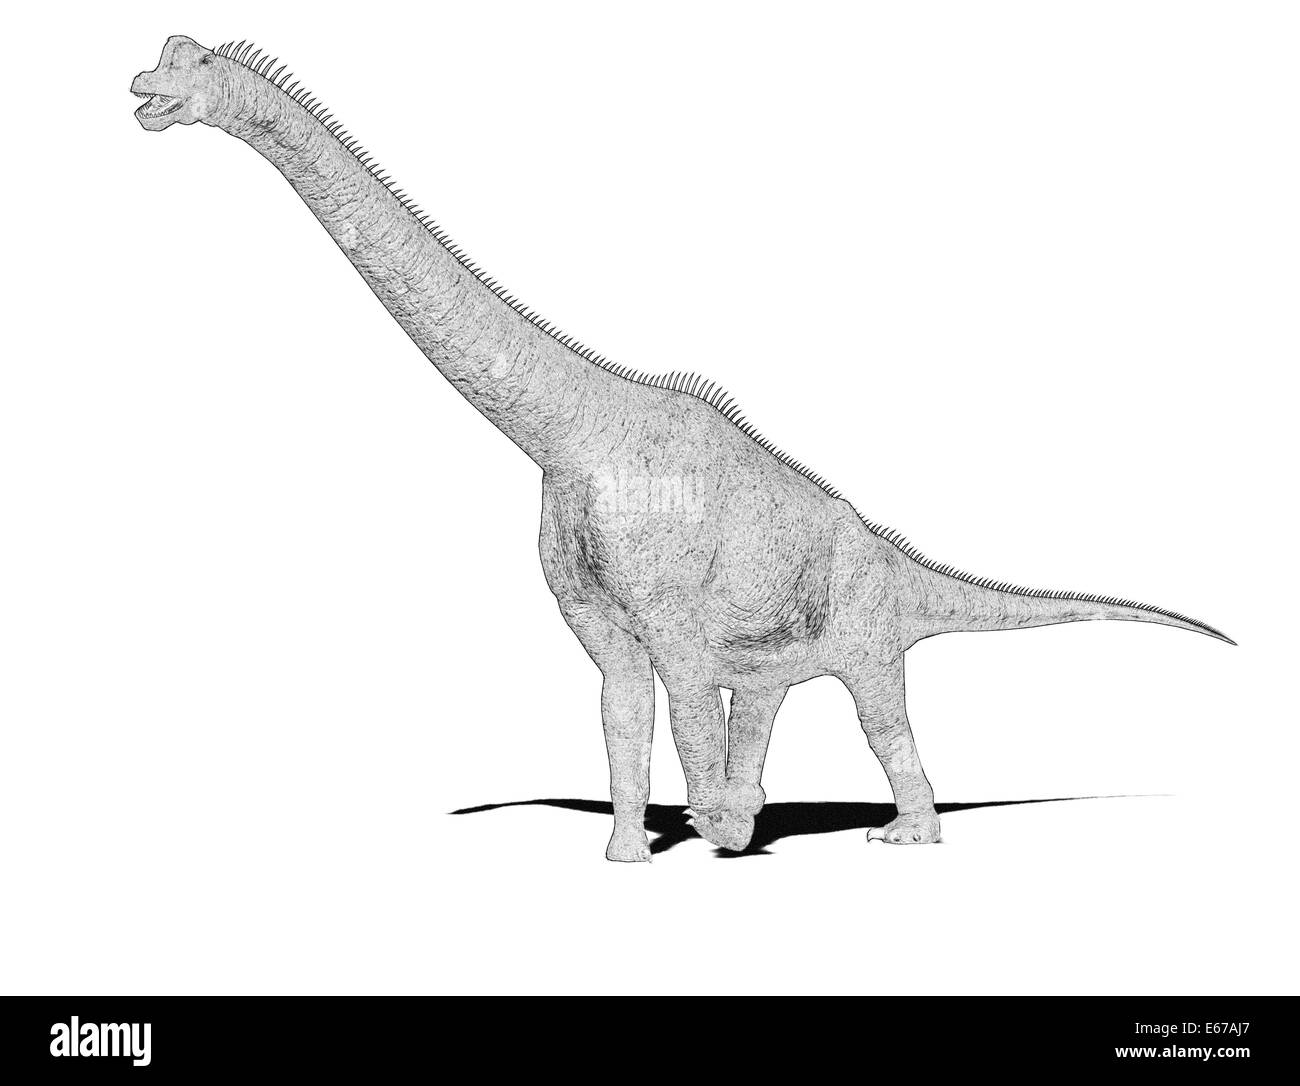 Dinosaurier Brachiosaurus / dinosaur Brachiosaurus Stock Photo